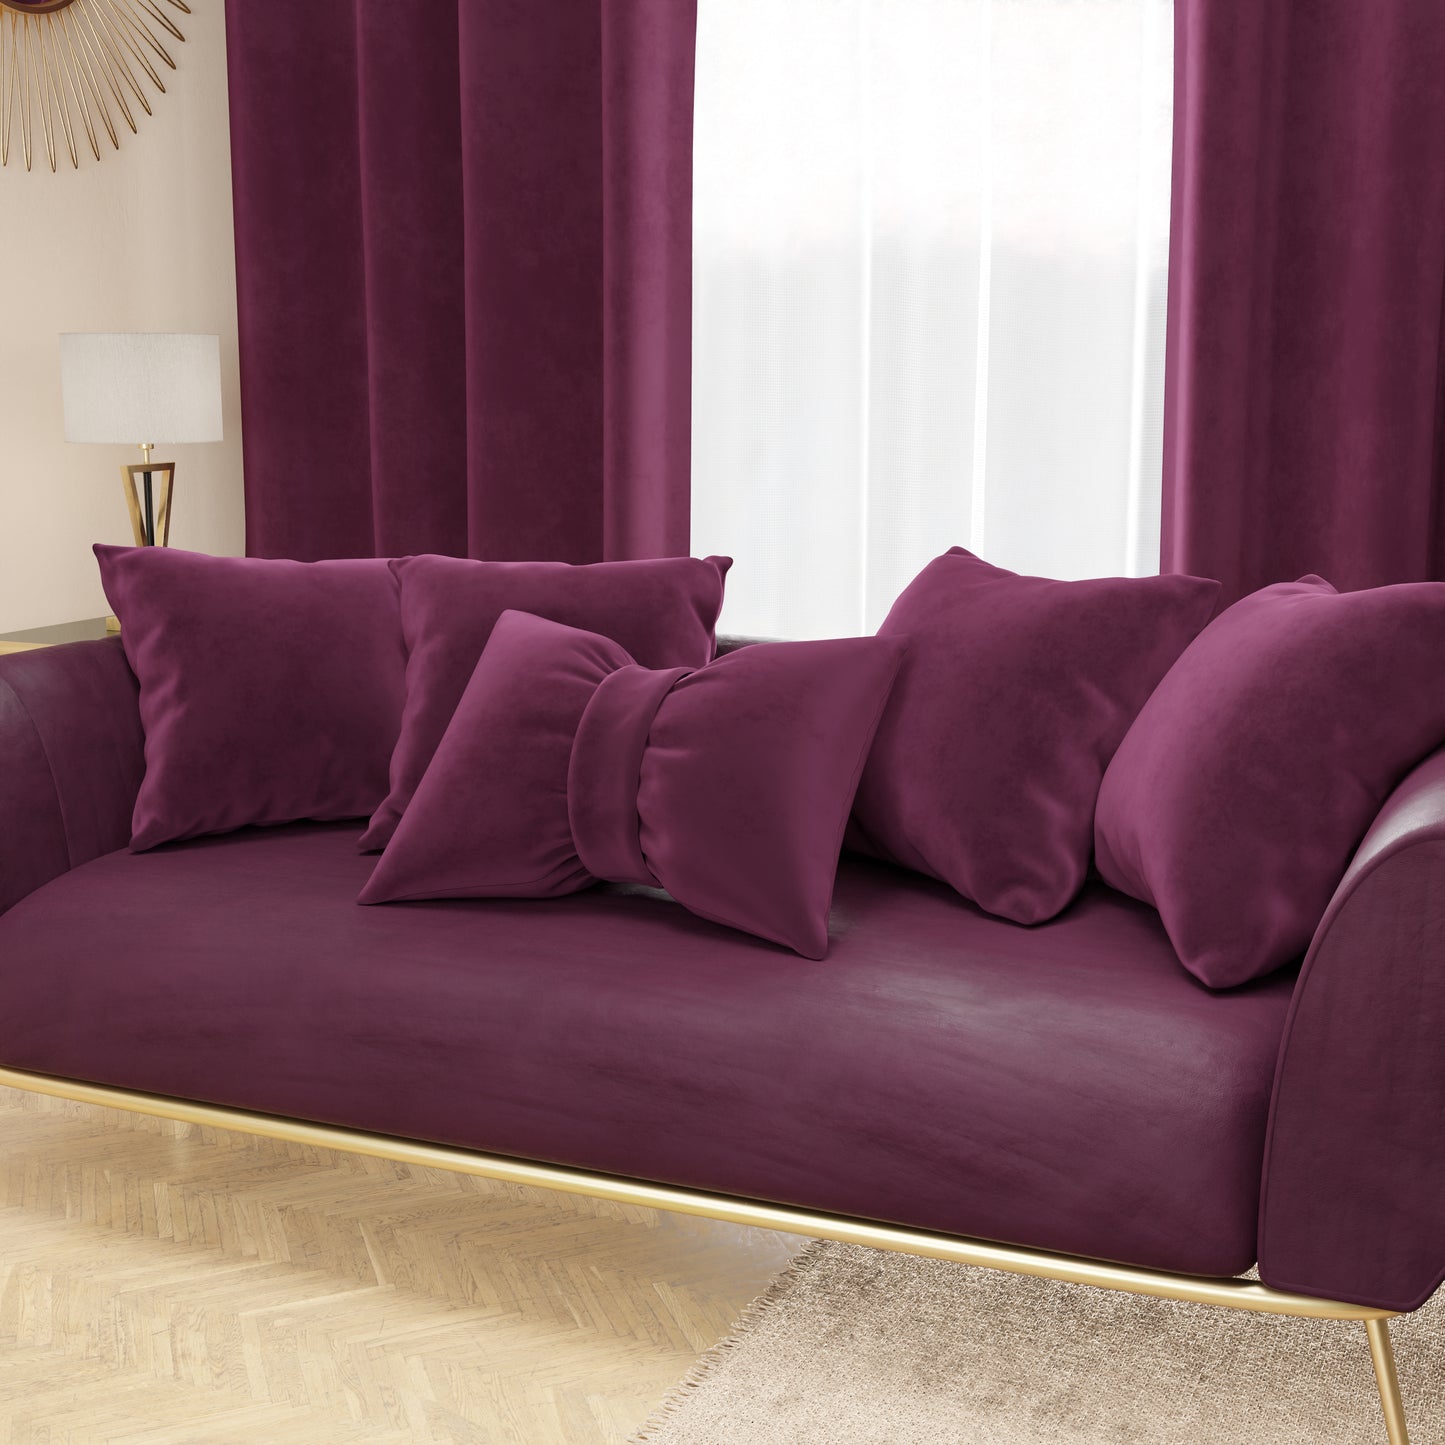 Cuscino Arredo Fiocco in Velluto 40x50 cm, Cuscino divano Prugna